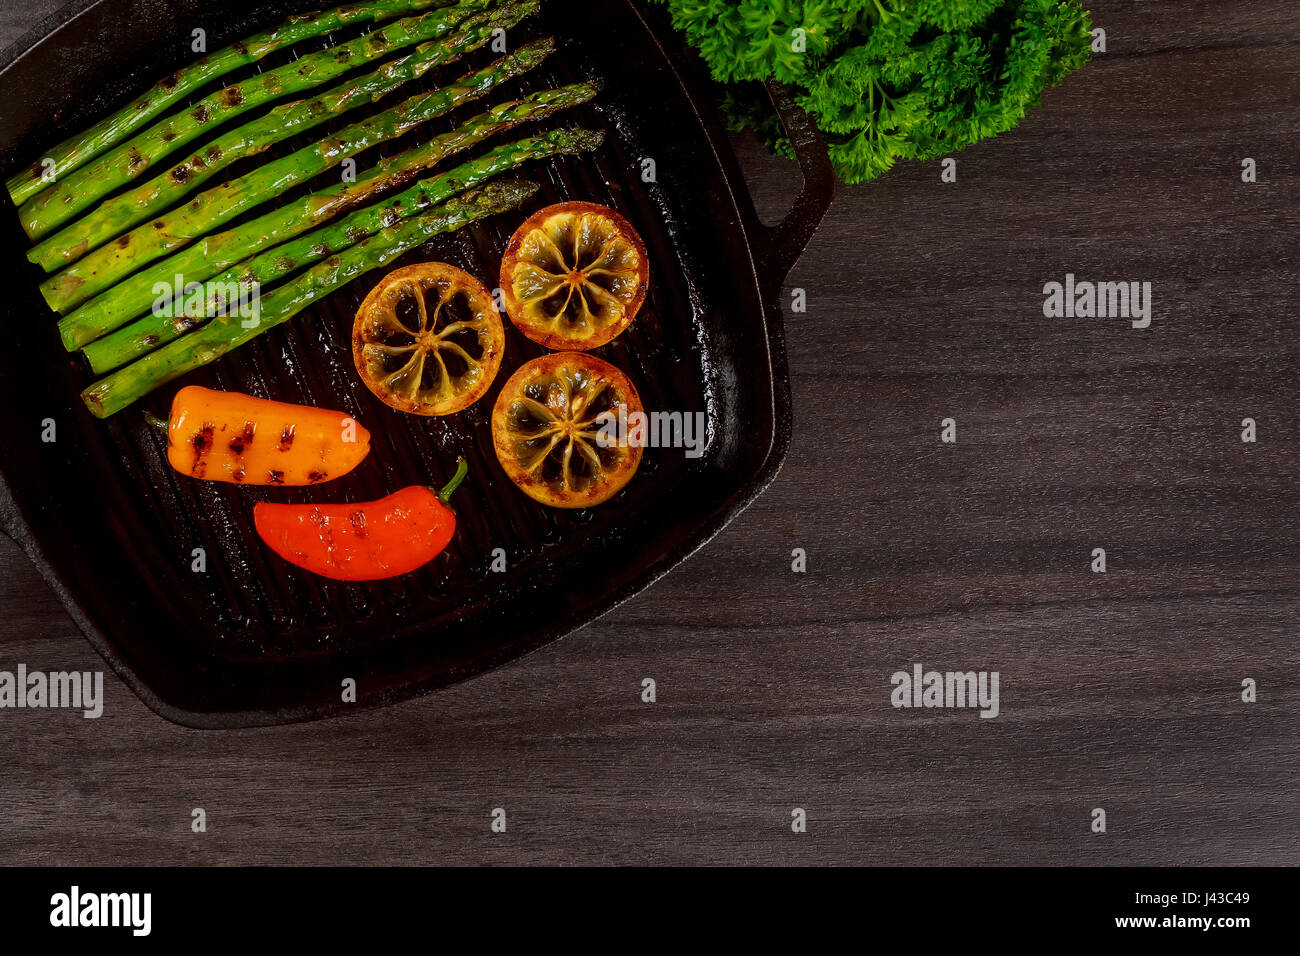 Asperges grillées au citron bio poivre dans une poêle grill Banque D'Images